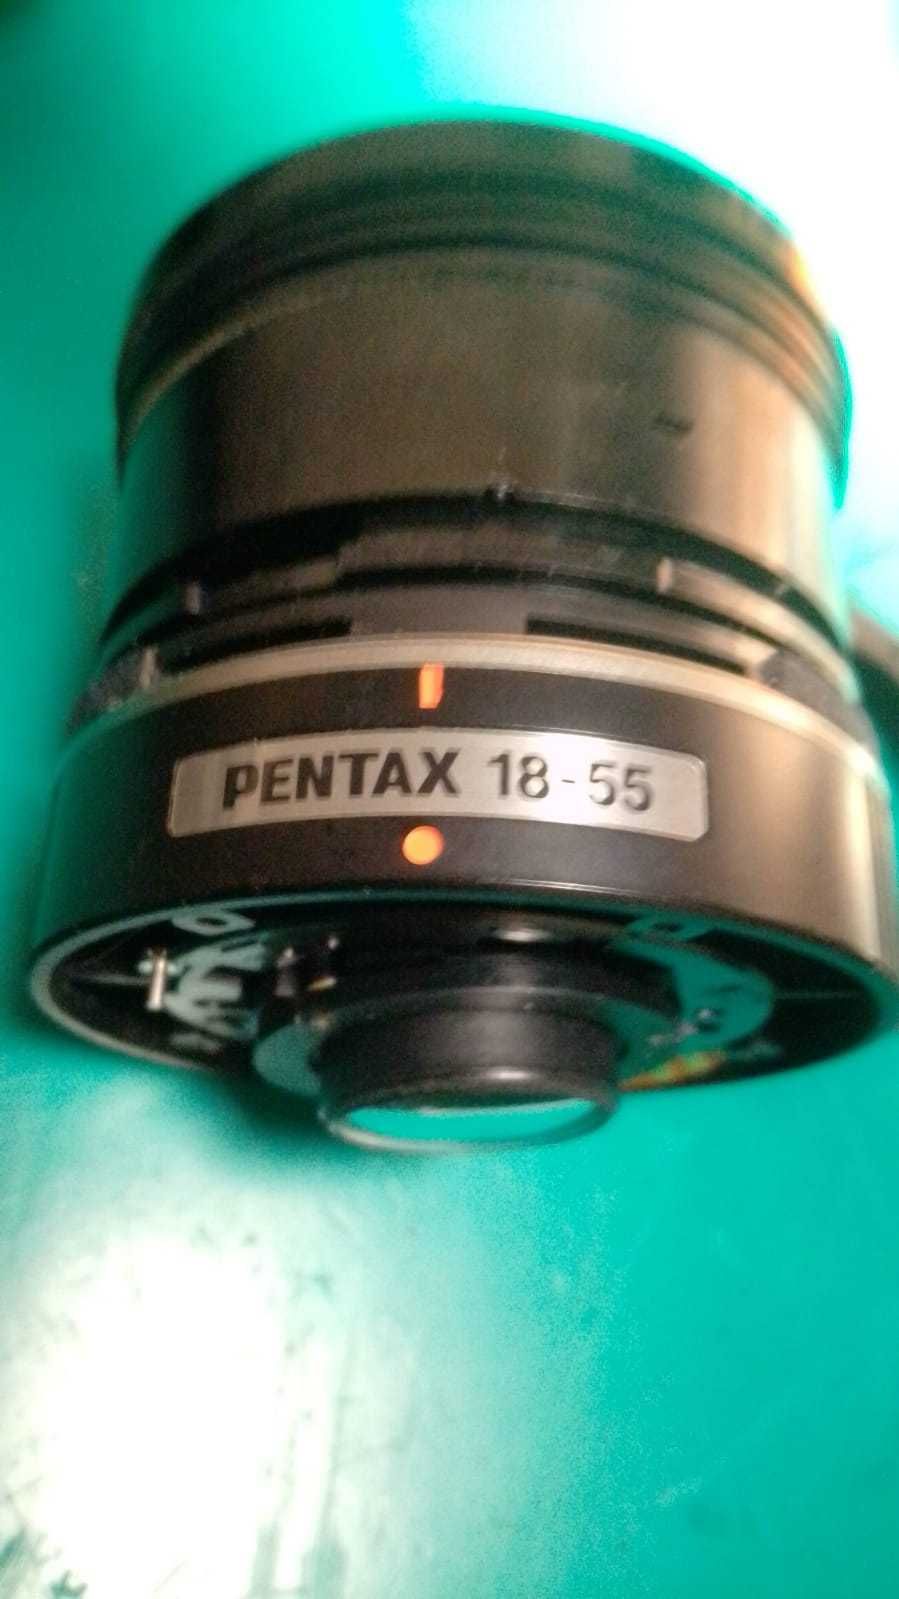 Pentax 18-55 SMC DAL